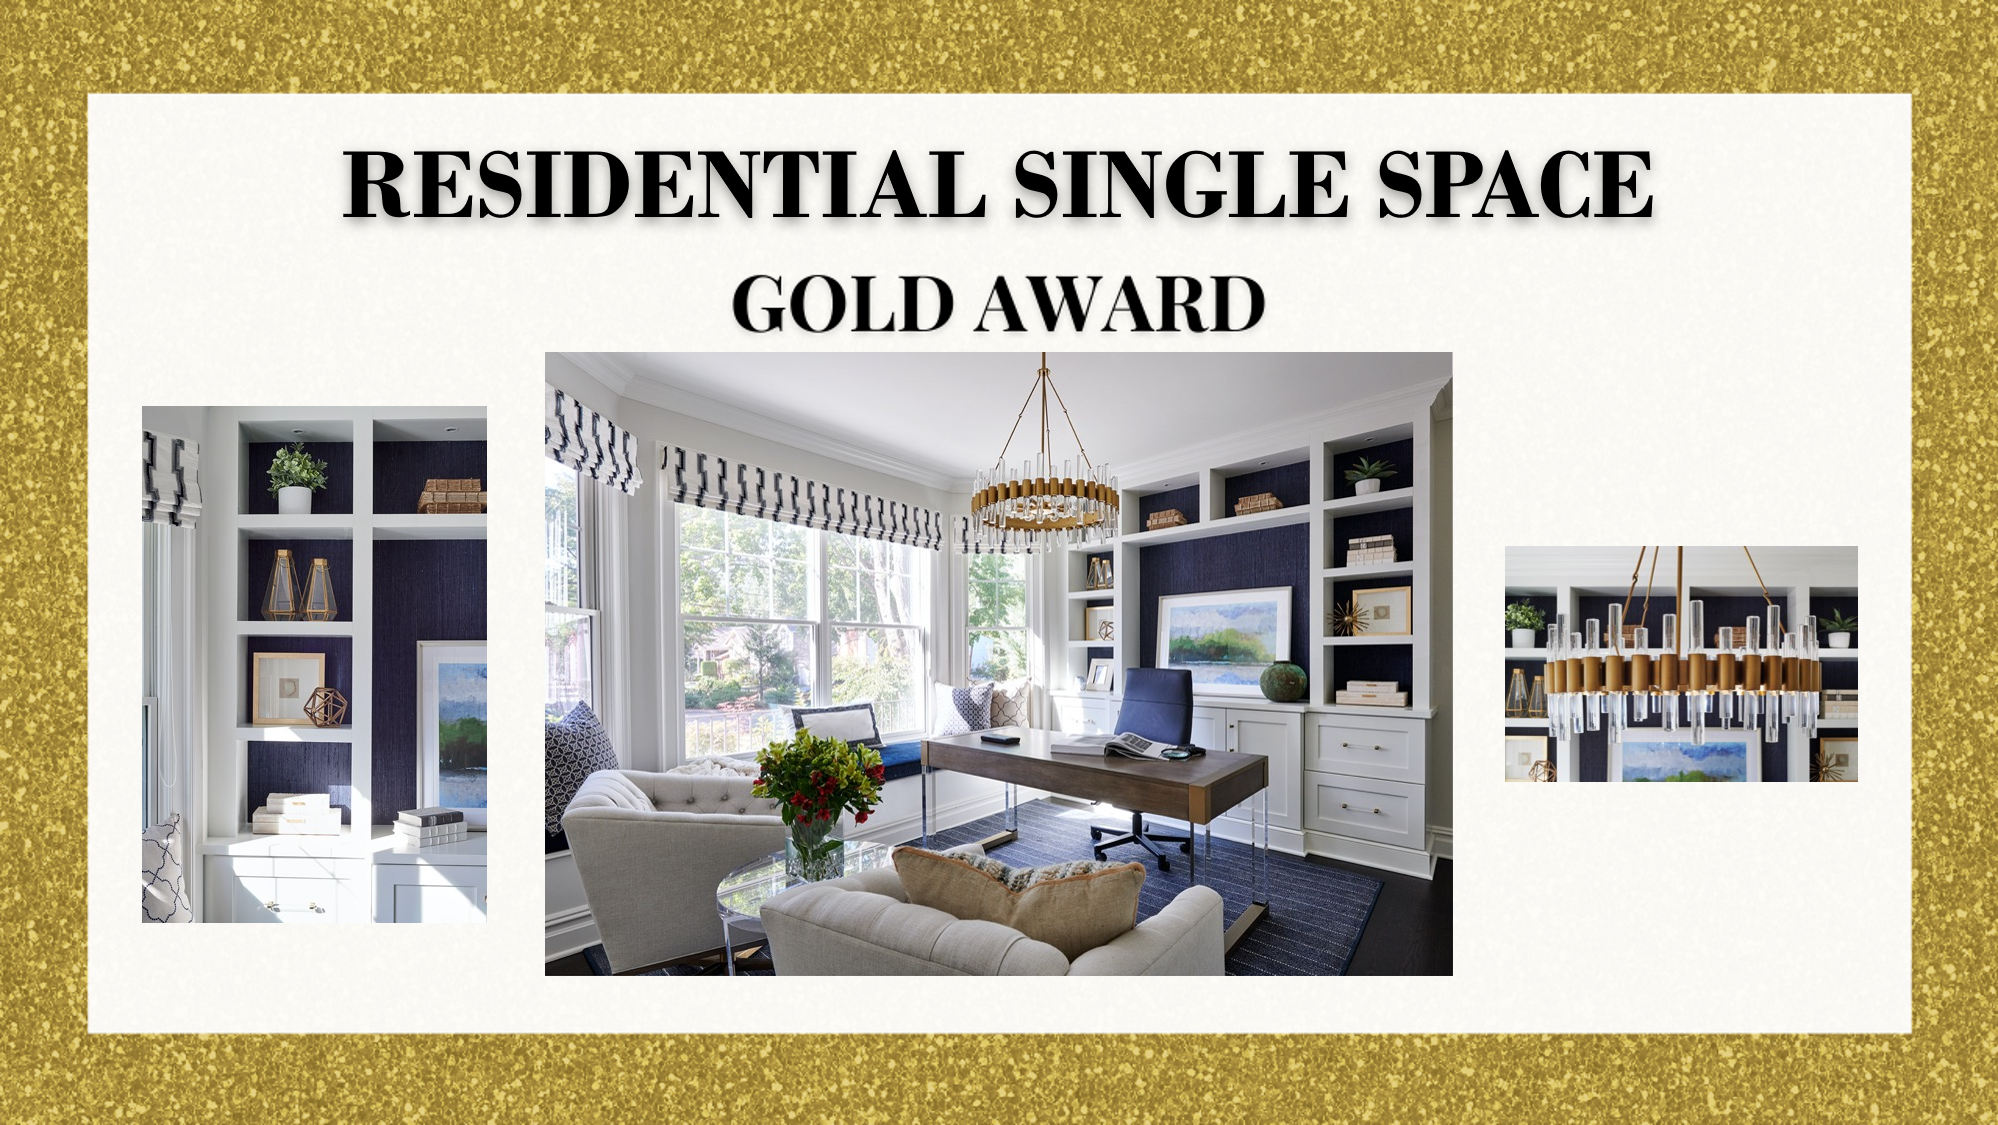 Gold Award Winner Residential Single Space